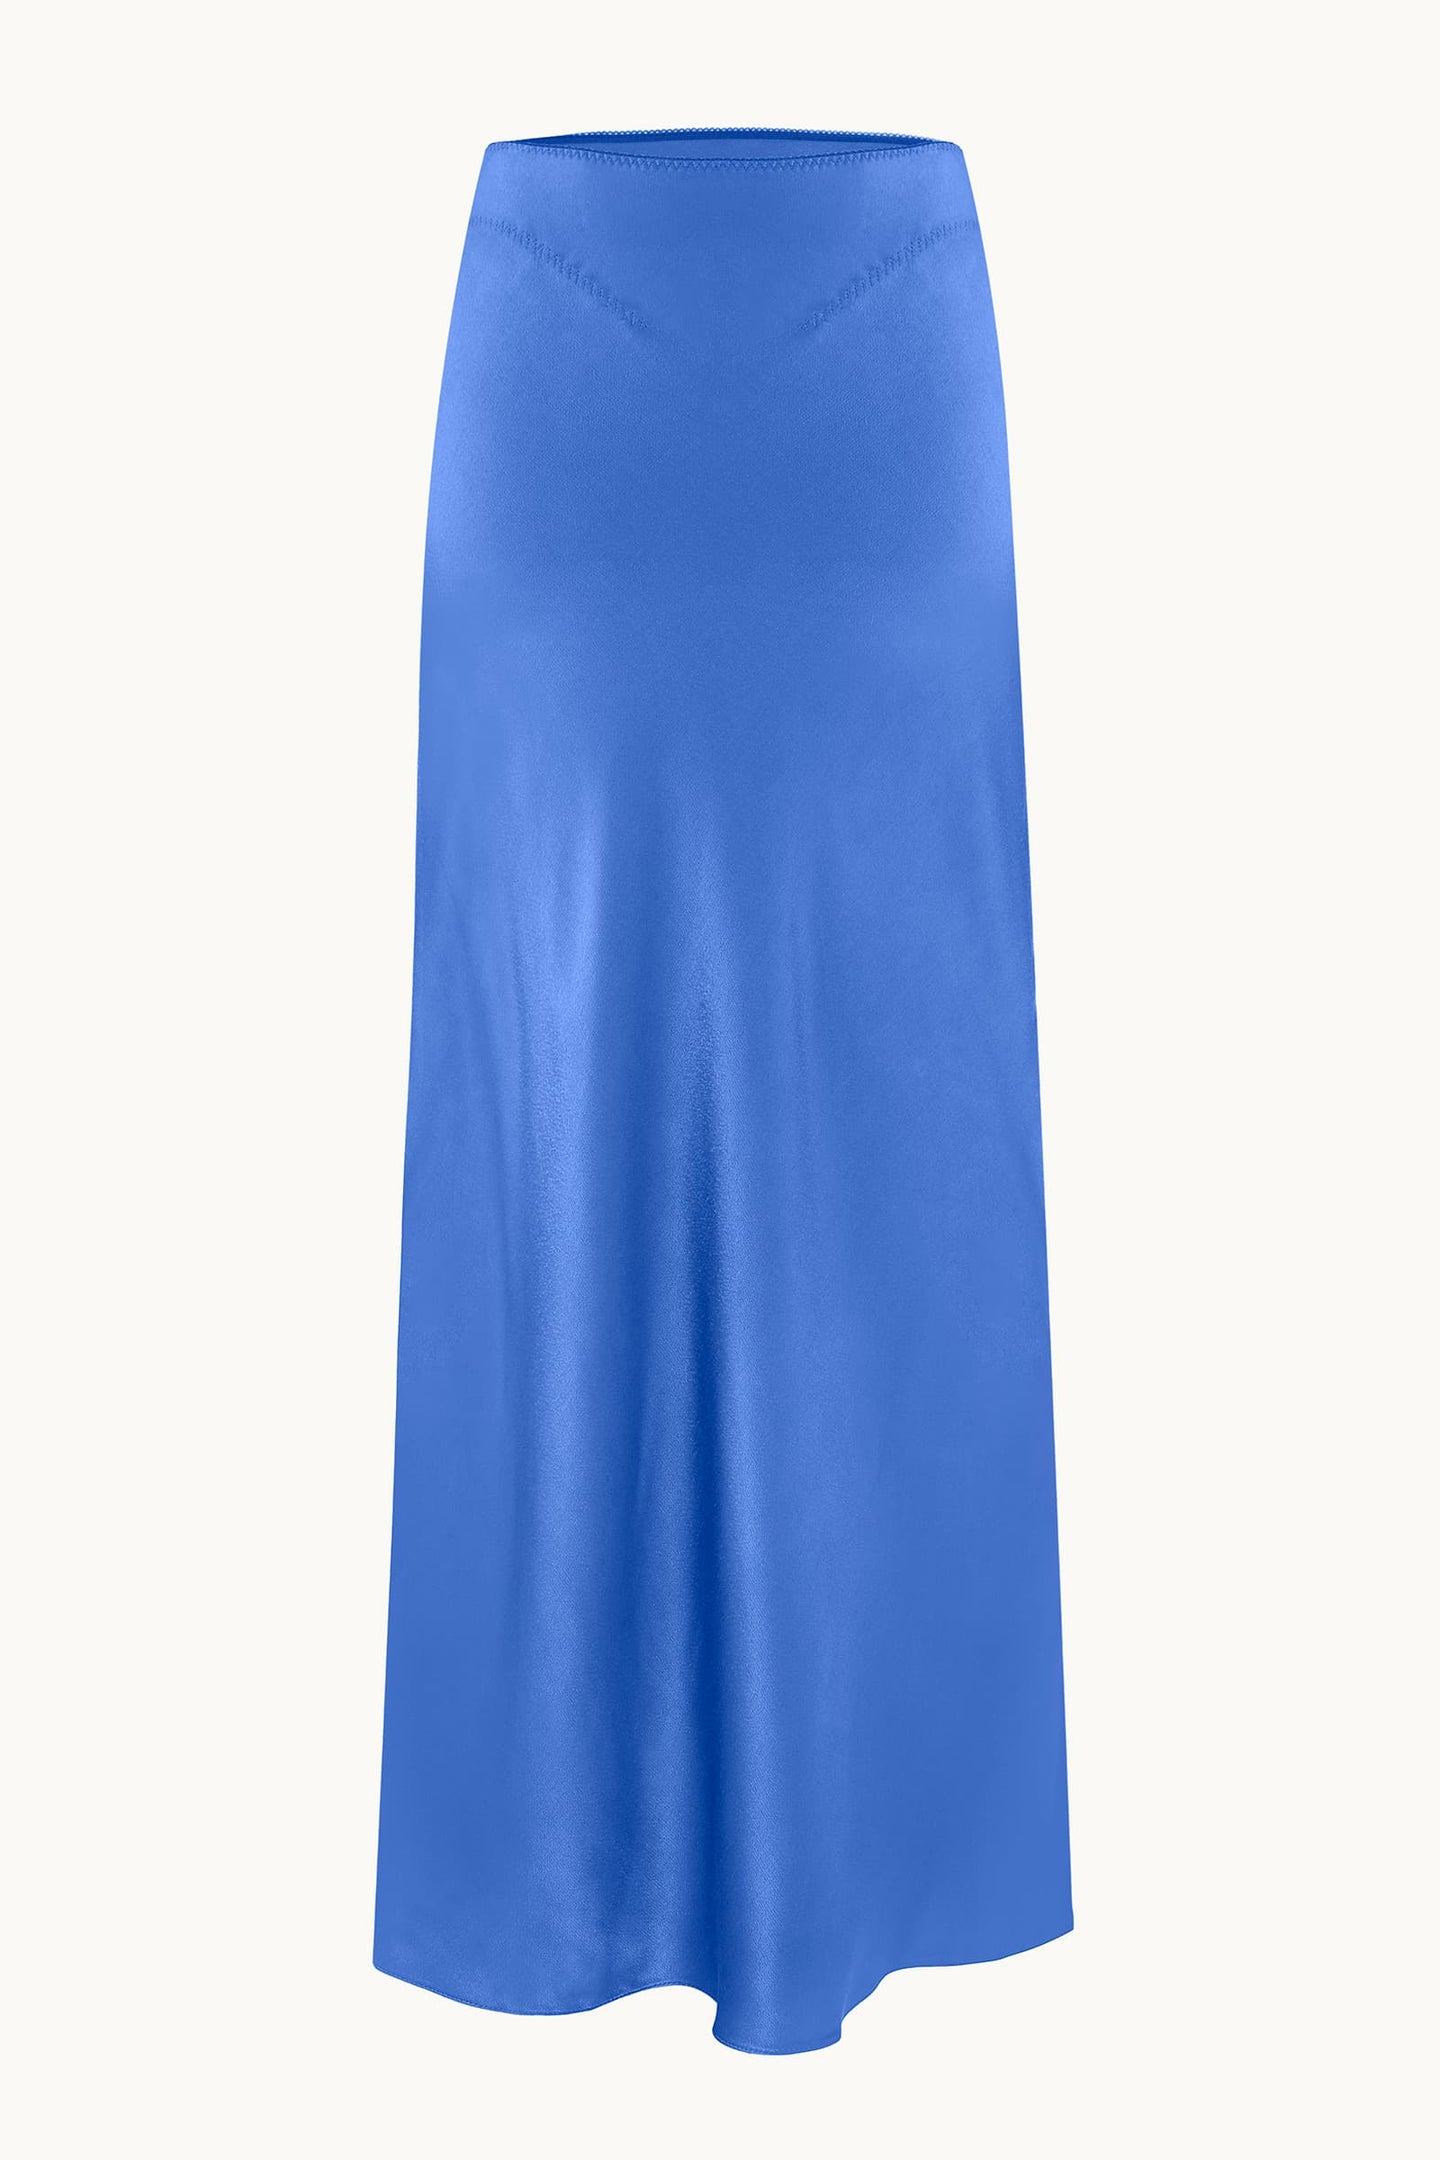 Voleta blue skirt front view